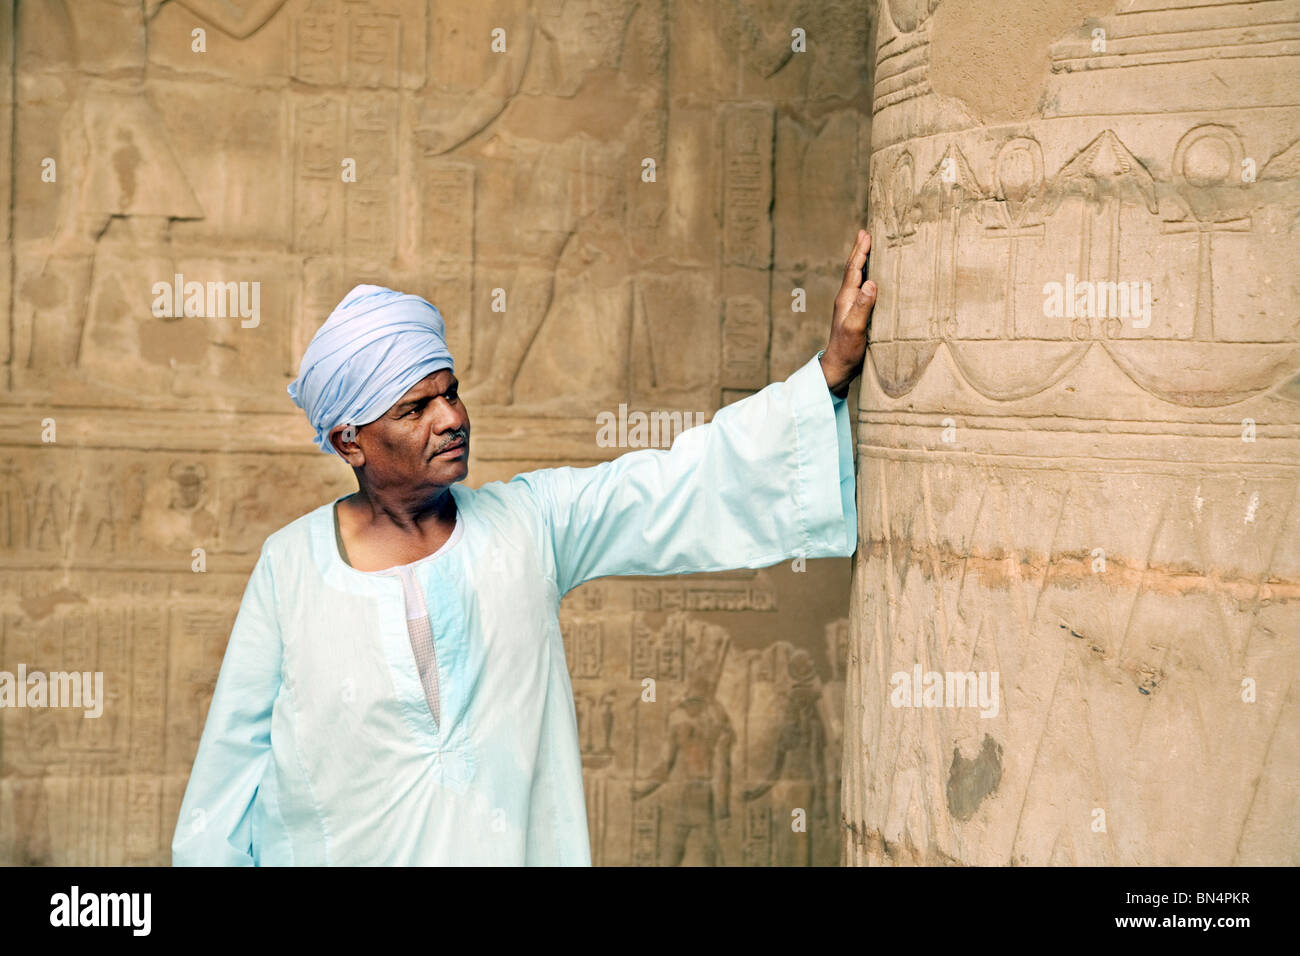 Un homme portant un guide égyptien galabia bleu appuyé contre une colonne, le temple d'Hatshepsout, Luxor, Égypte Banque D'Images